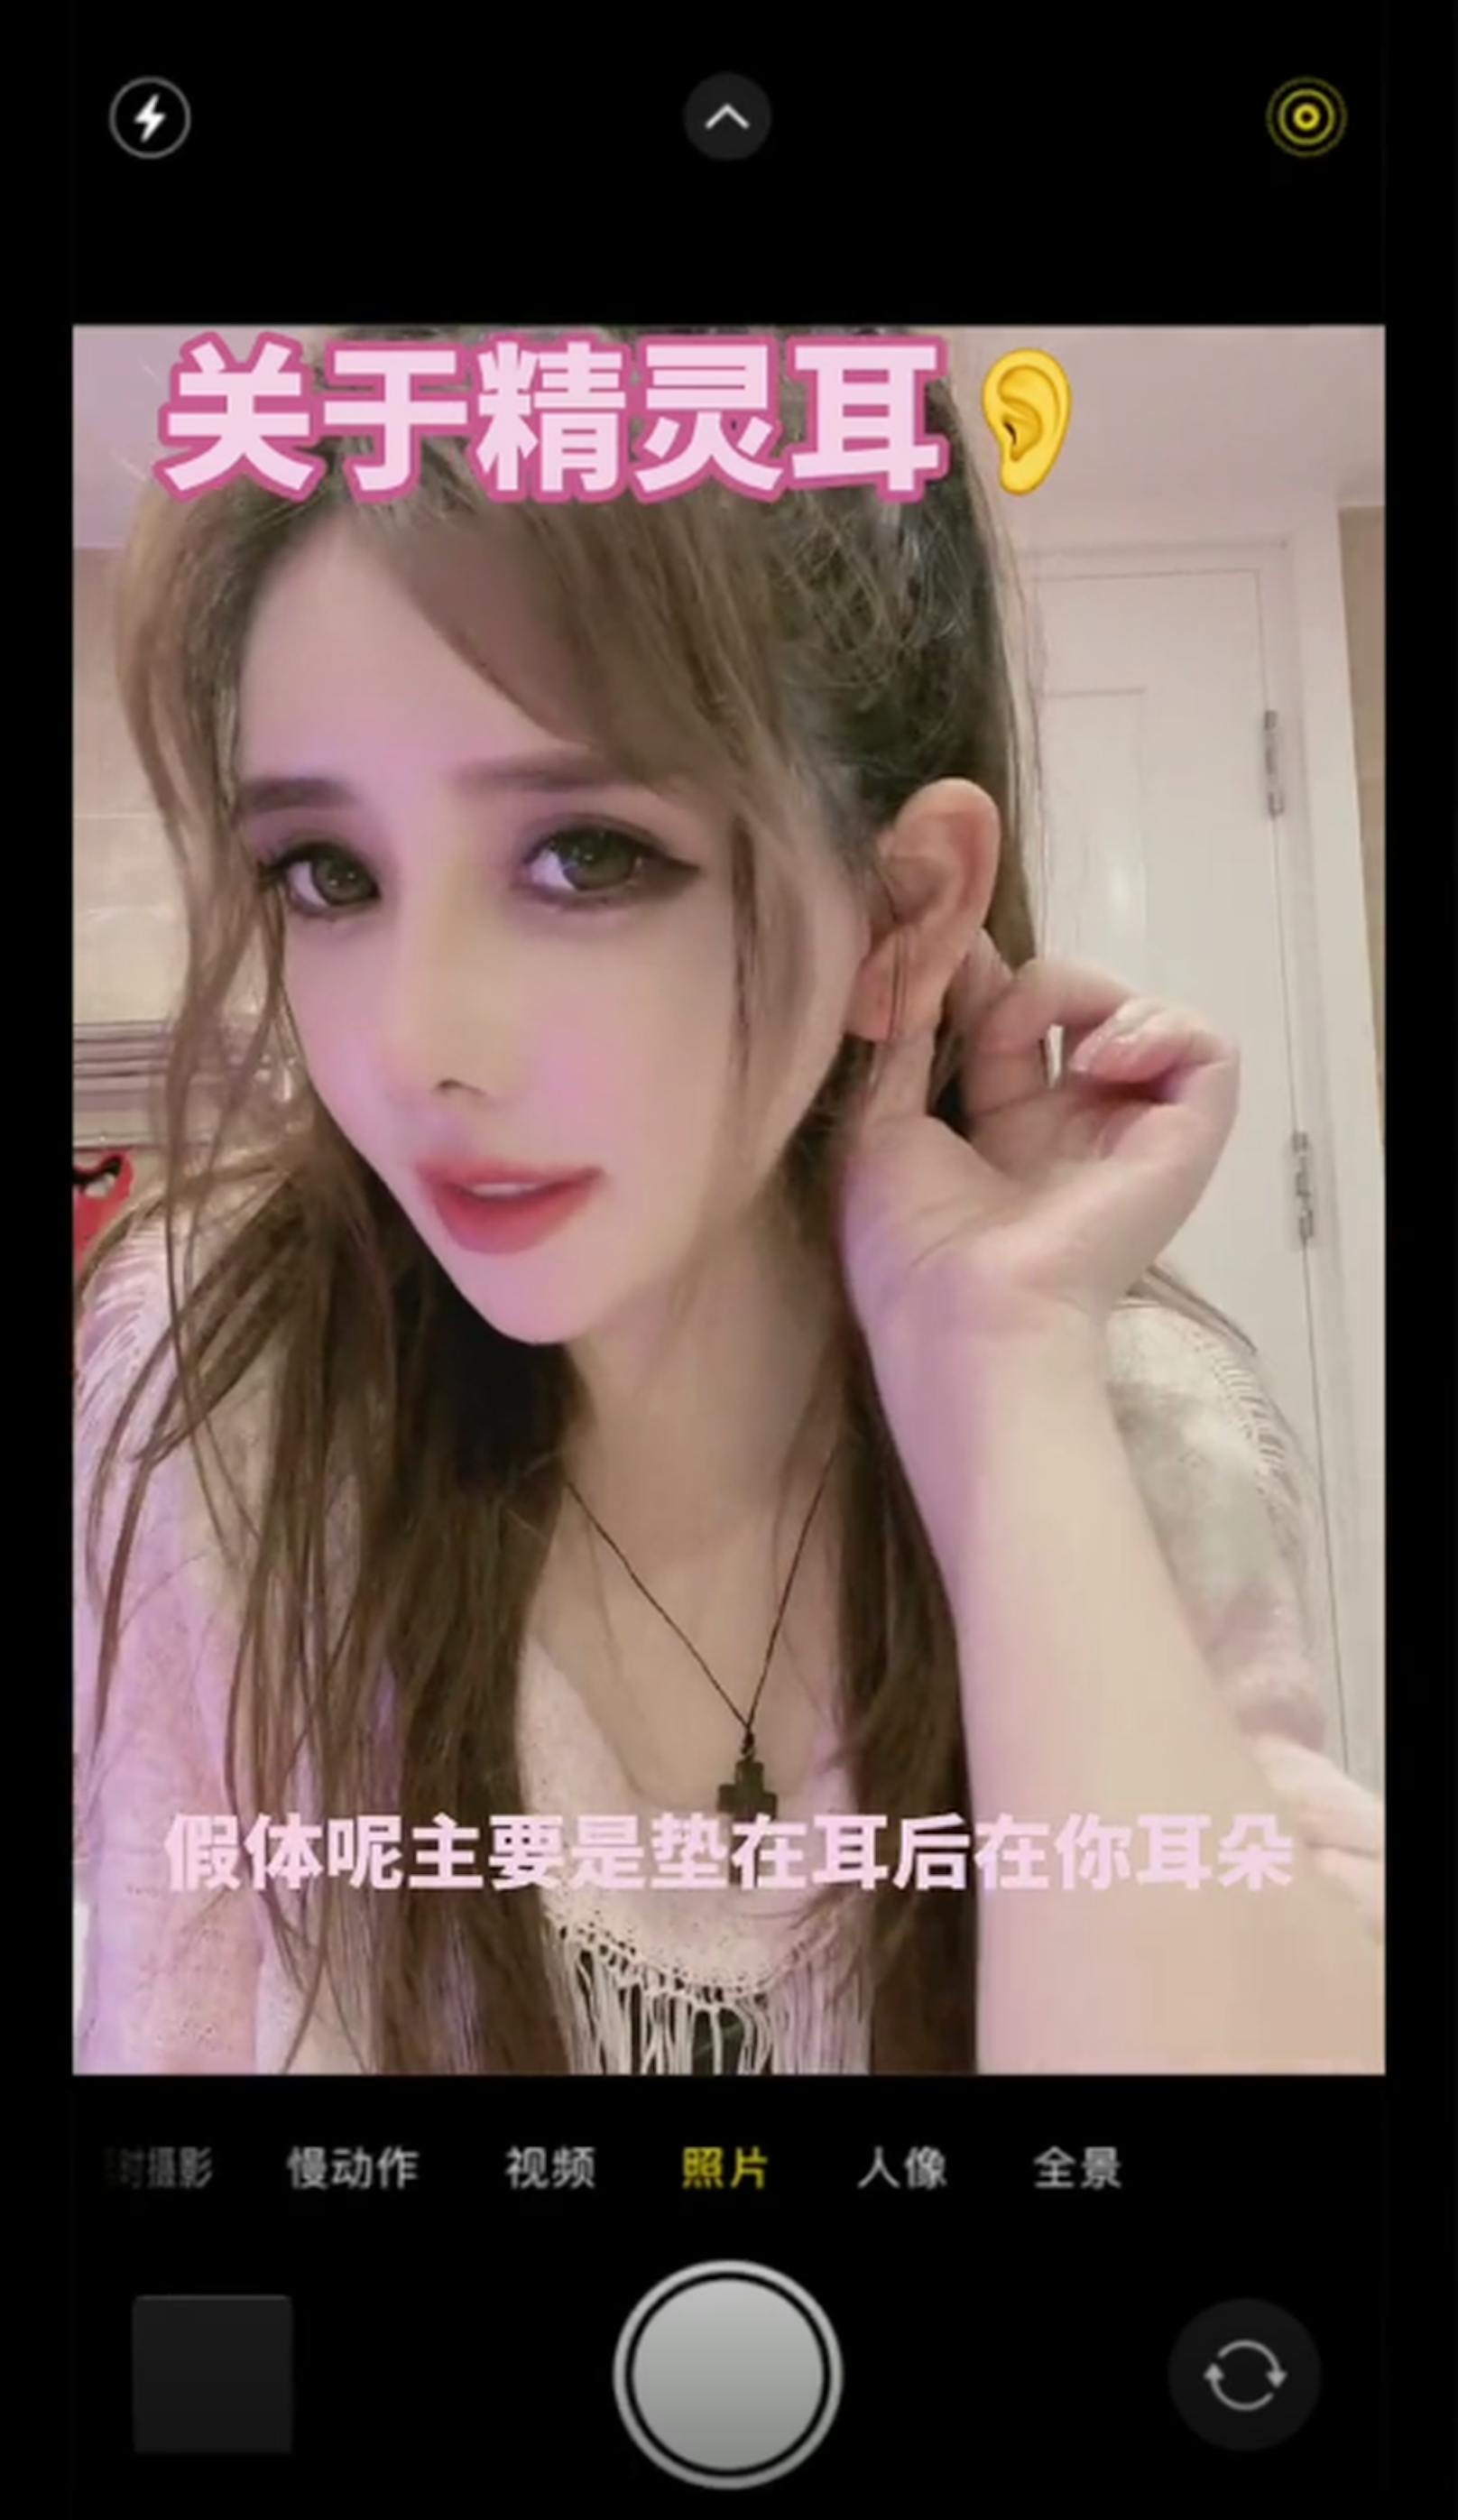 Auf dem chinesischen Social Media Portal Douyin (dem Pendant zu <a data-li-document-ref="100147952" href="https://www.heute.at/s/dieser-tiktok-trend-soll-kilos-purzeln-lassen-100147952">TikTok</a>) spricht Yi Xiao Ge über ihre Erfahrungen mit dem Elf Ear Eingriff. Sie trägt ein Implantat, das die Ohren von hinten nach außen drückt.